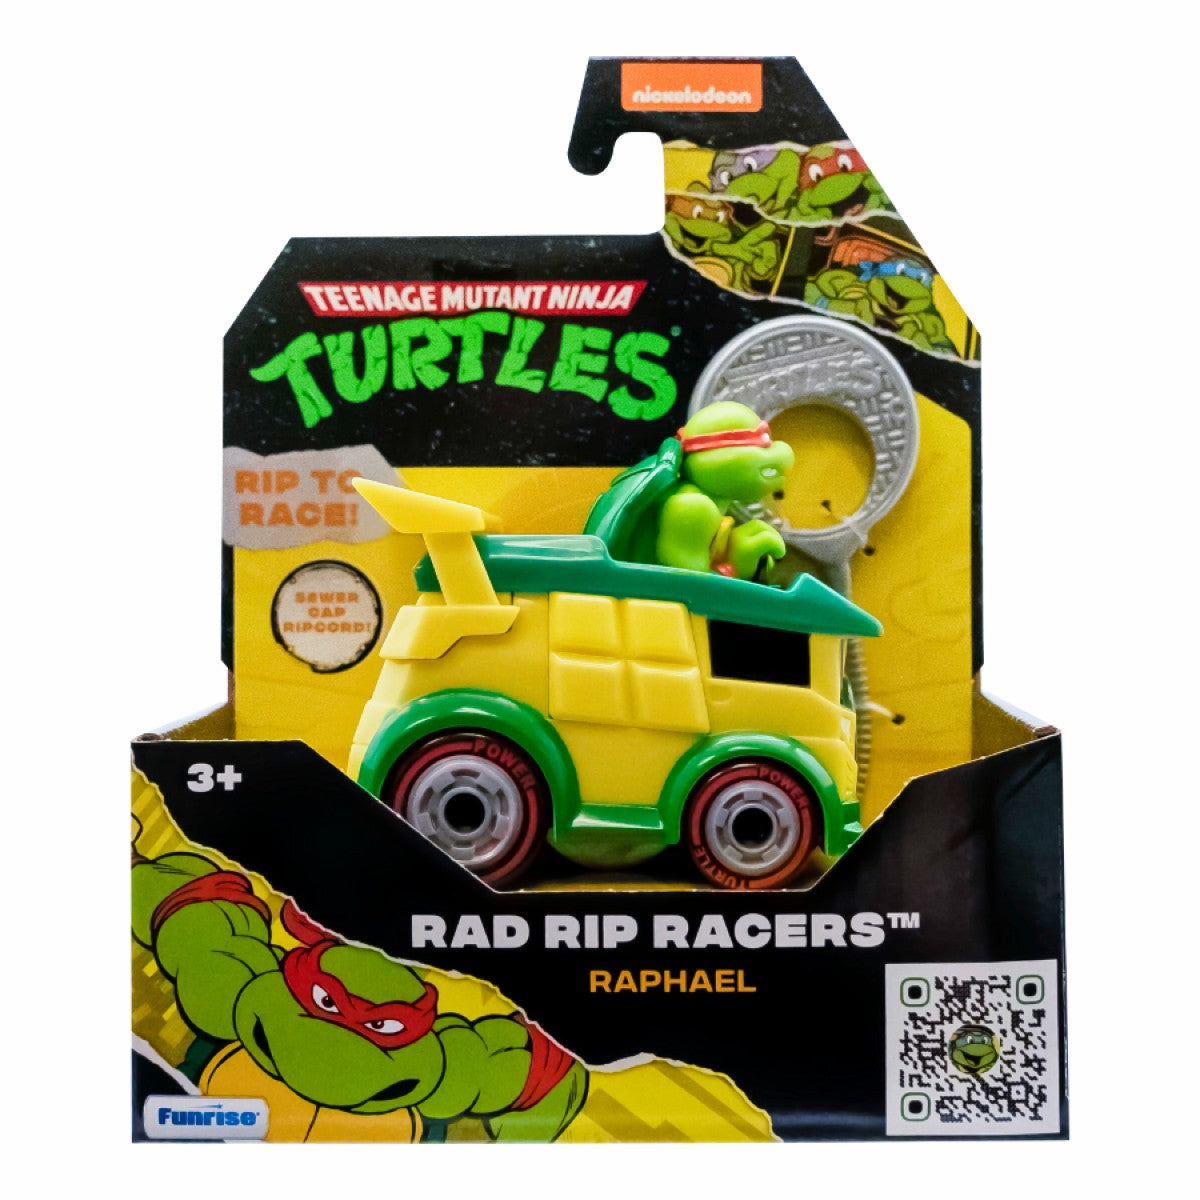 Teenage Mutant Ninja Turtles Rad Rip Racers Raphael